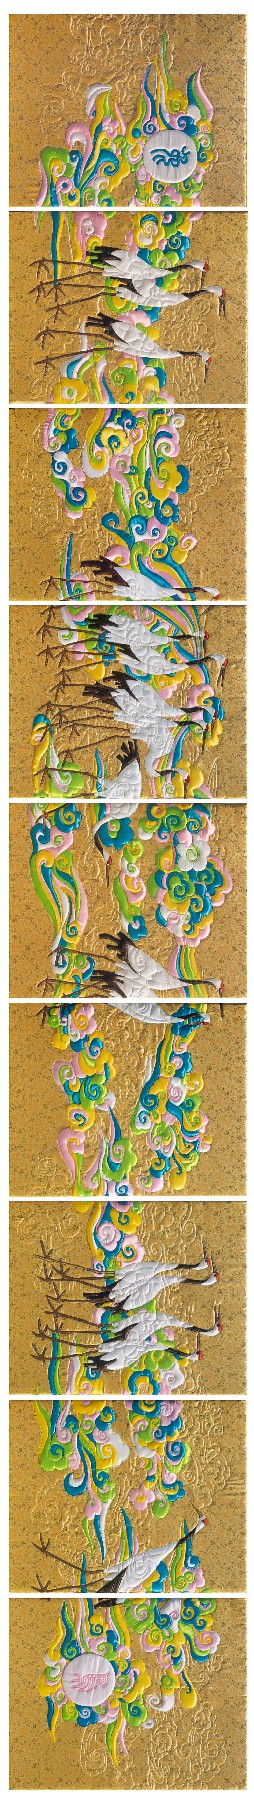 将工艺美术与绘画有机融合——著名壁画家唐鸣岳、赵嵩青探索发掘壁画艺术的最大能量